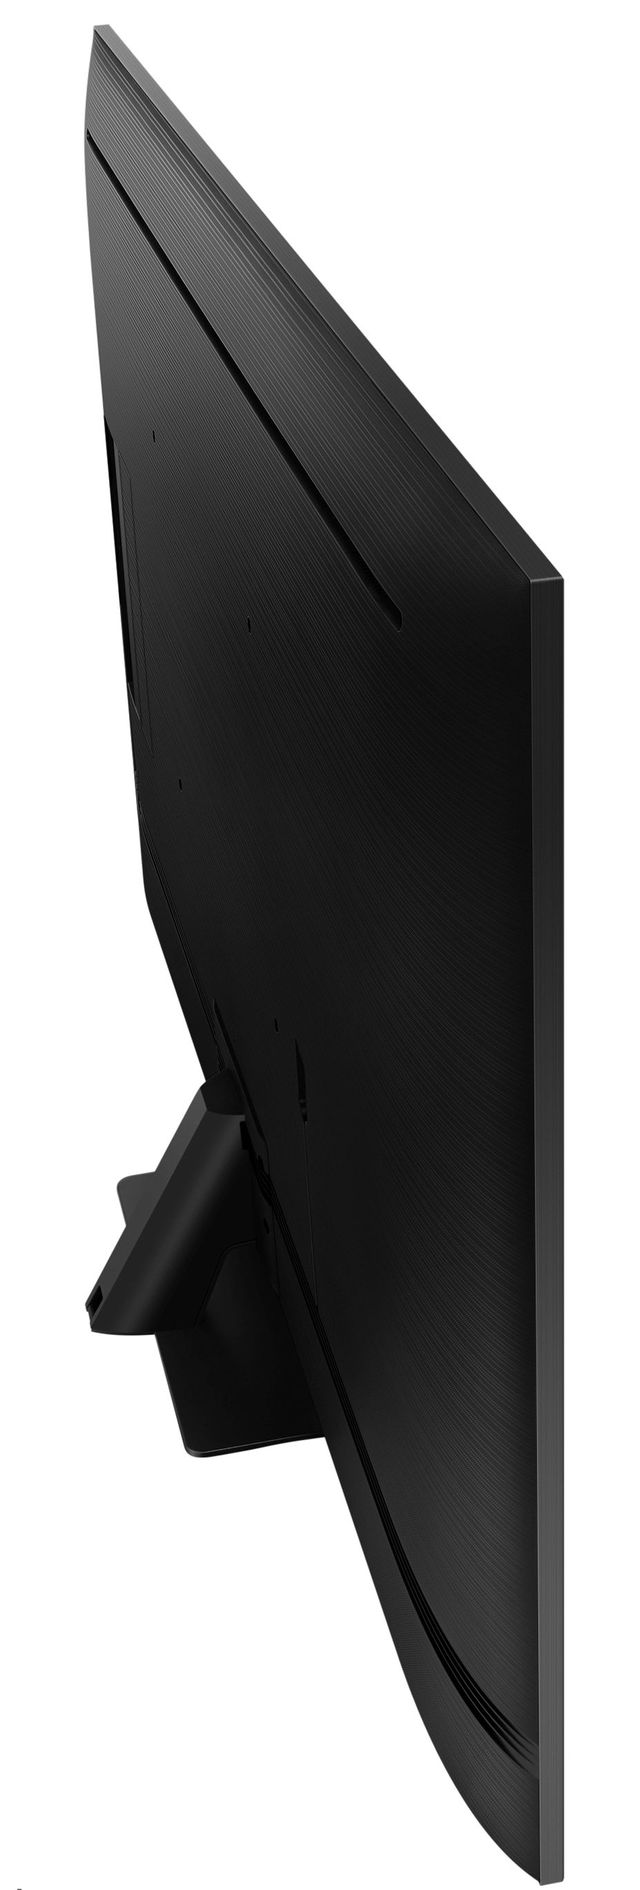 Samsung Q80T Series 65" 4K Ultra HD QLED Smart TV 6